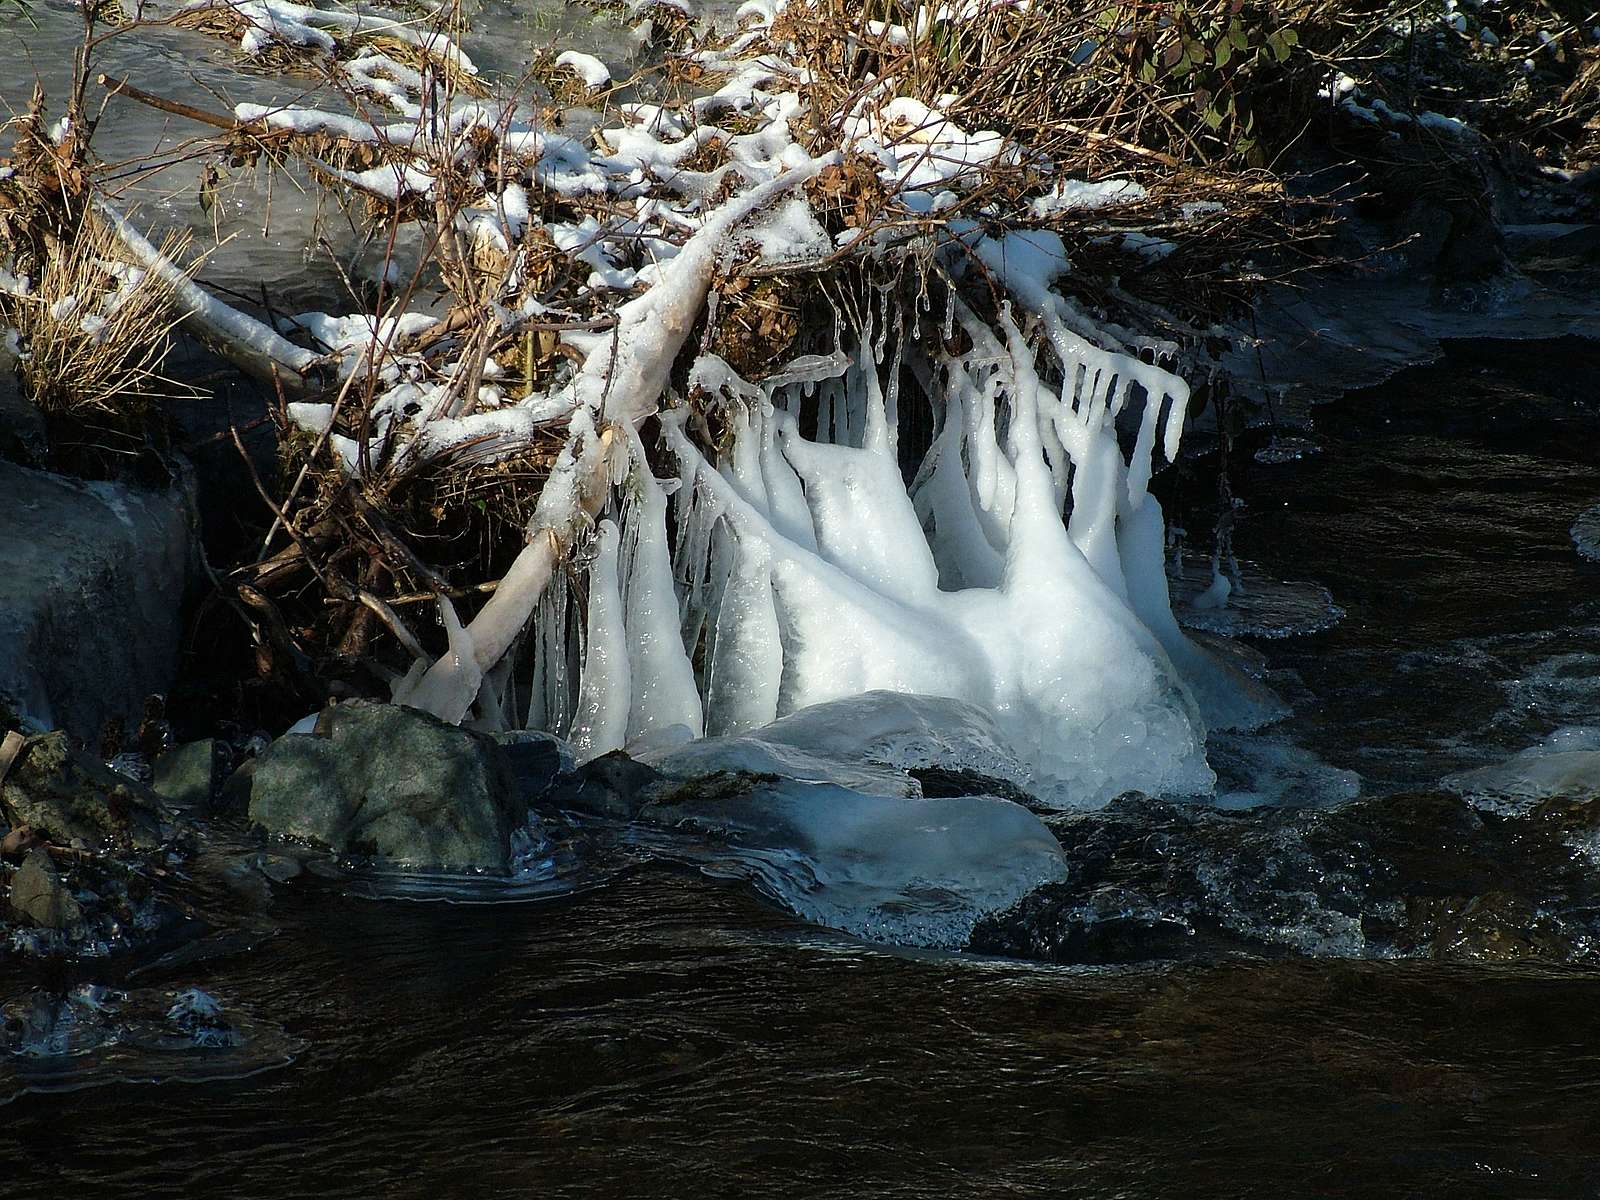 Icy stalactites